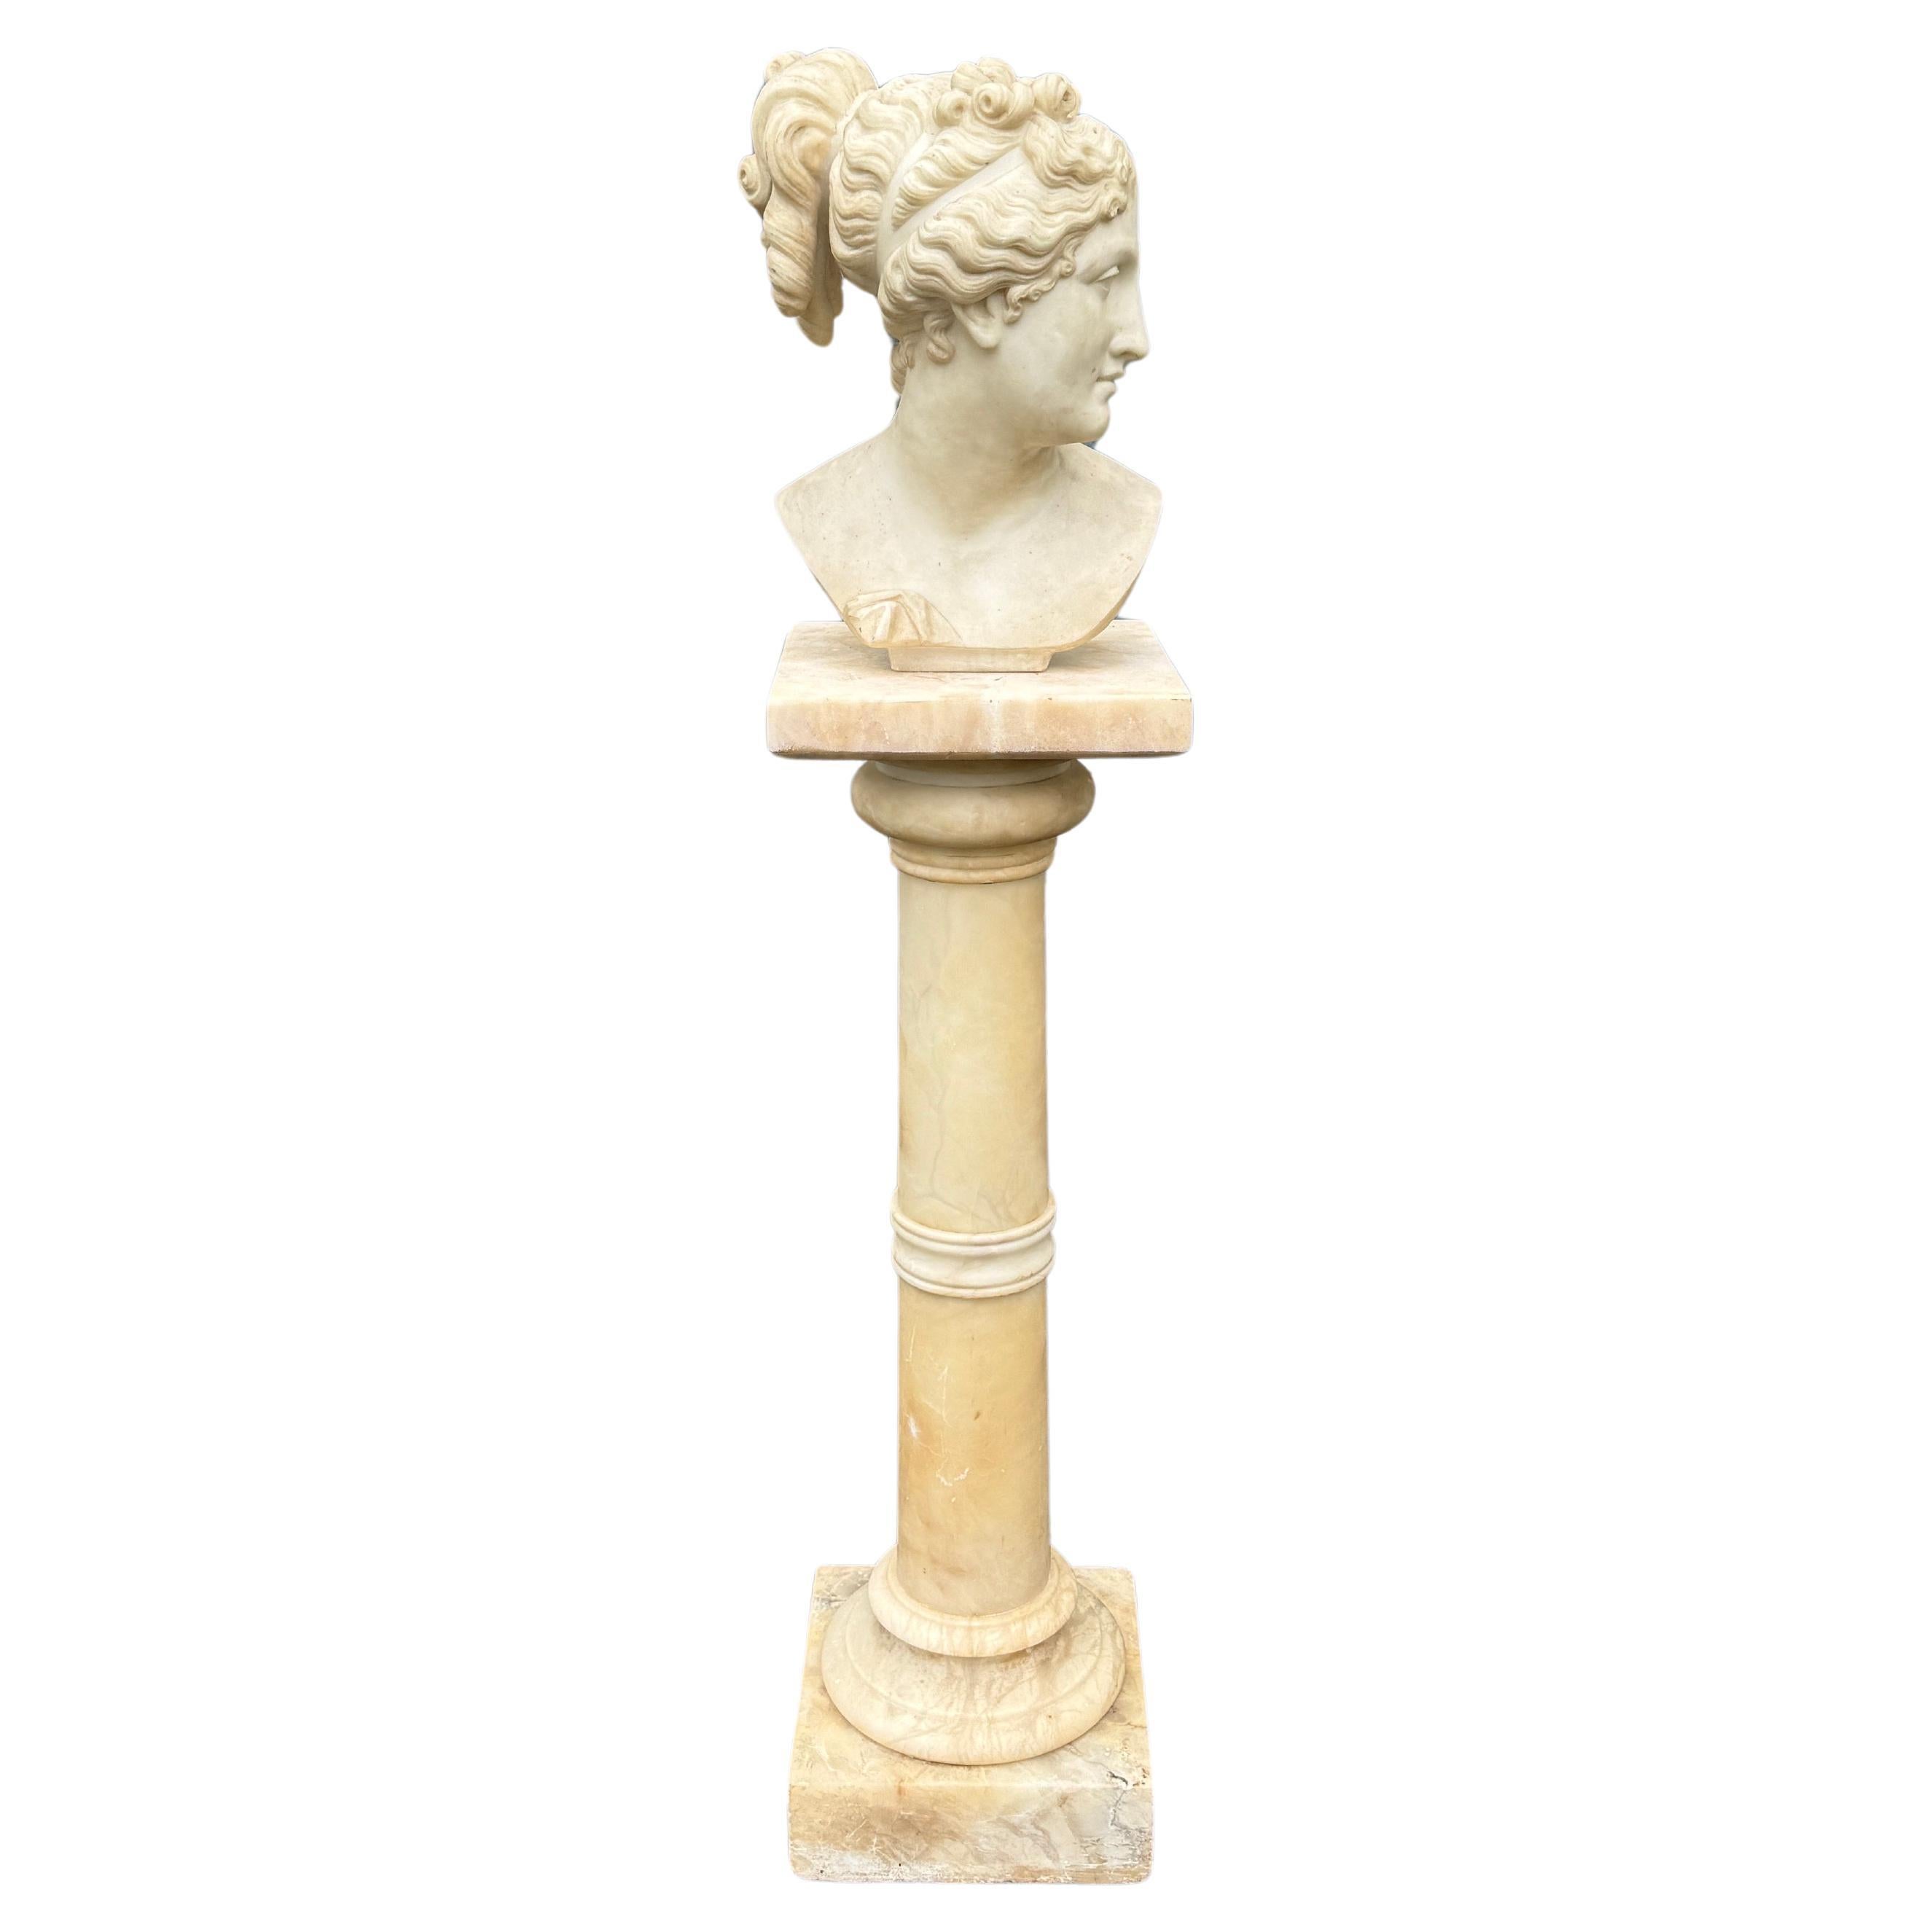 Un exquis buste en marbre du 19e siècle représentant une figure féminine.  Véritable témoignage de l'artisanat de l'époque romaine classique, cette pièce repose sur un socle en marbre blanc en trois parties, ce qui en fait un point focal étonnant